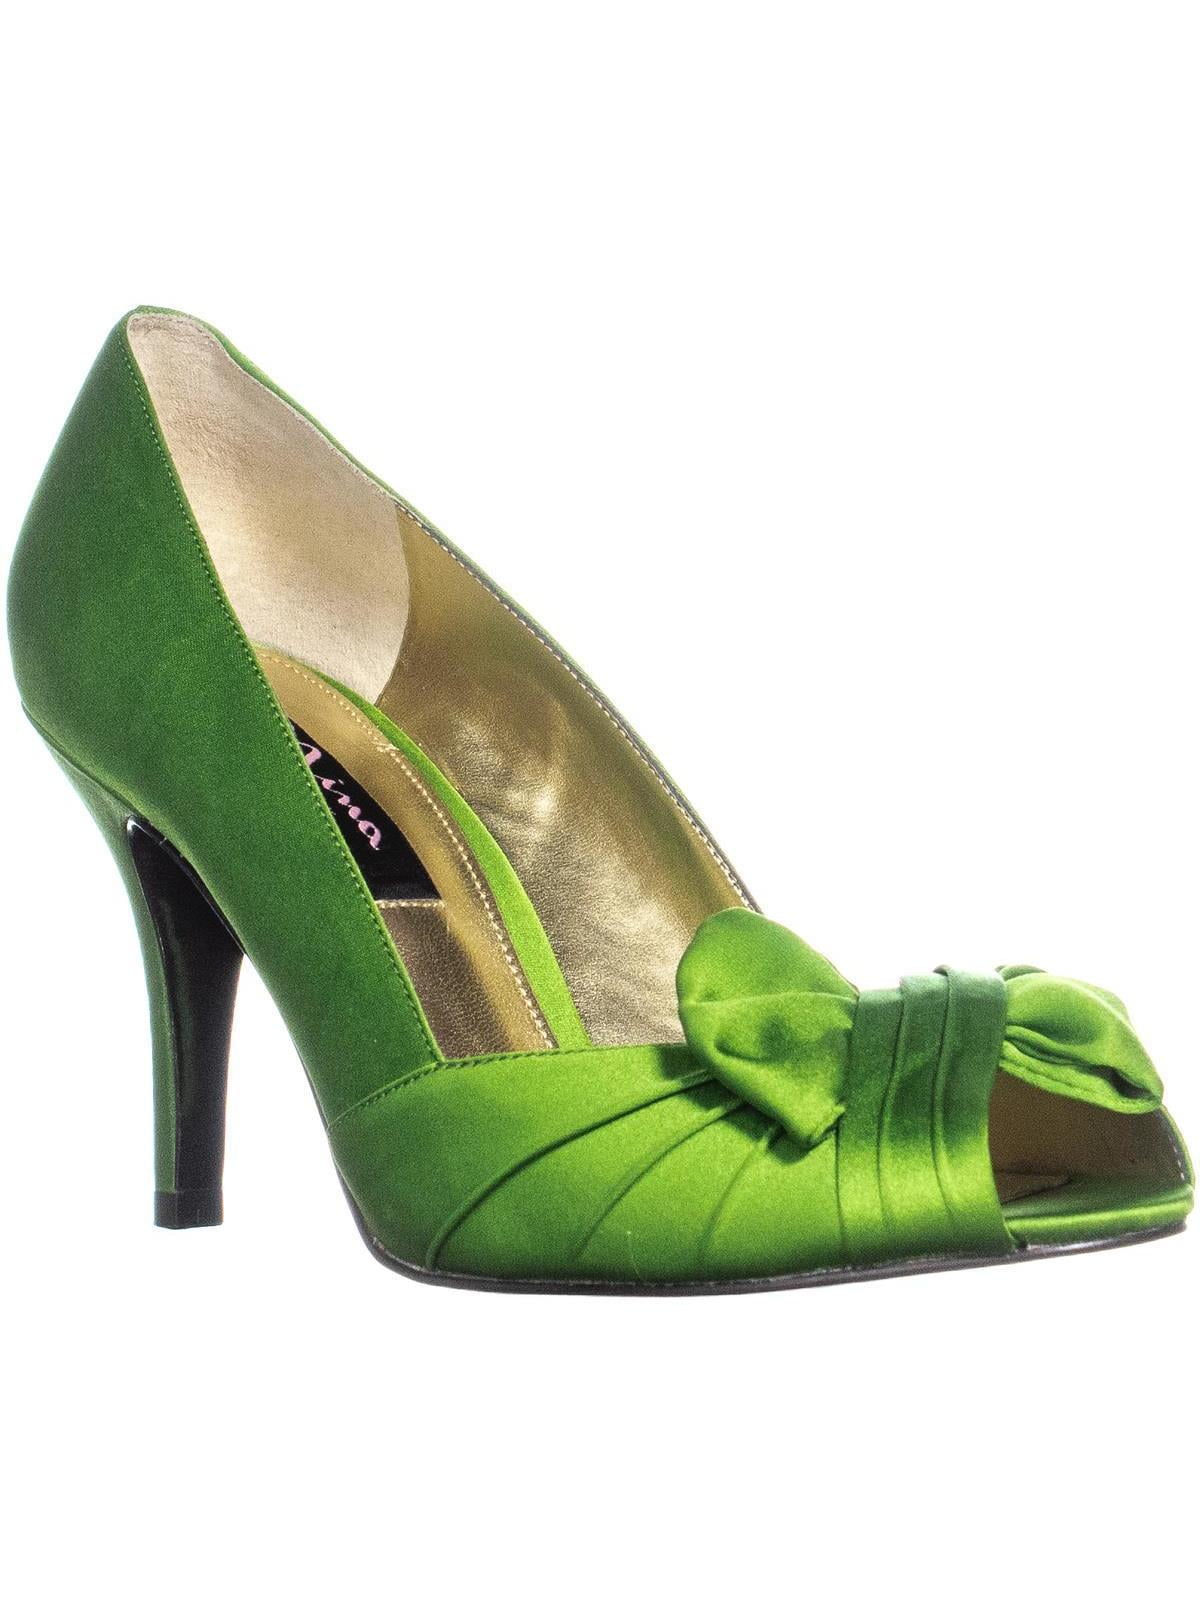 GIY Womens Block Heel Pump Sandals Open Toe Lace Up Evening Dress Chunky High Heel Dress Shoes Green 